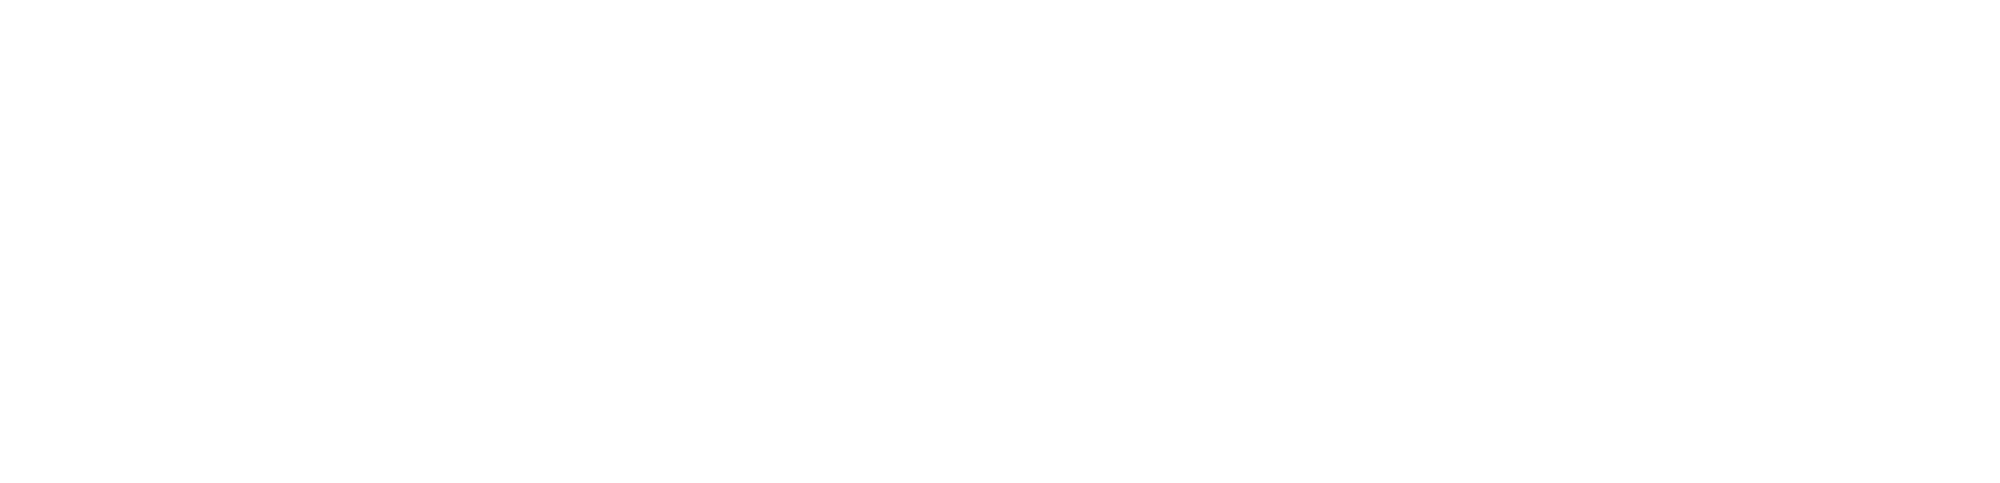 RedRover logo